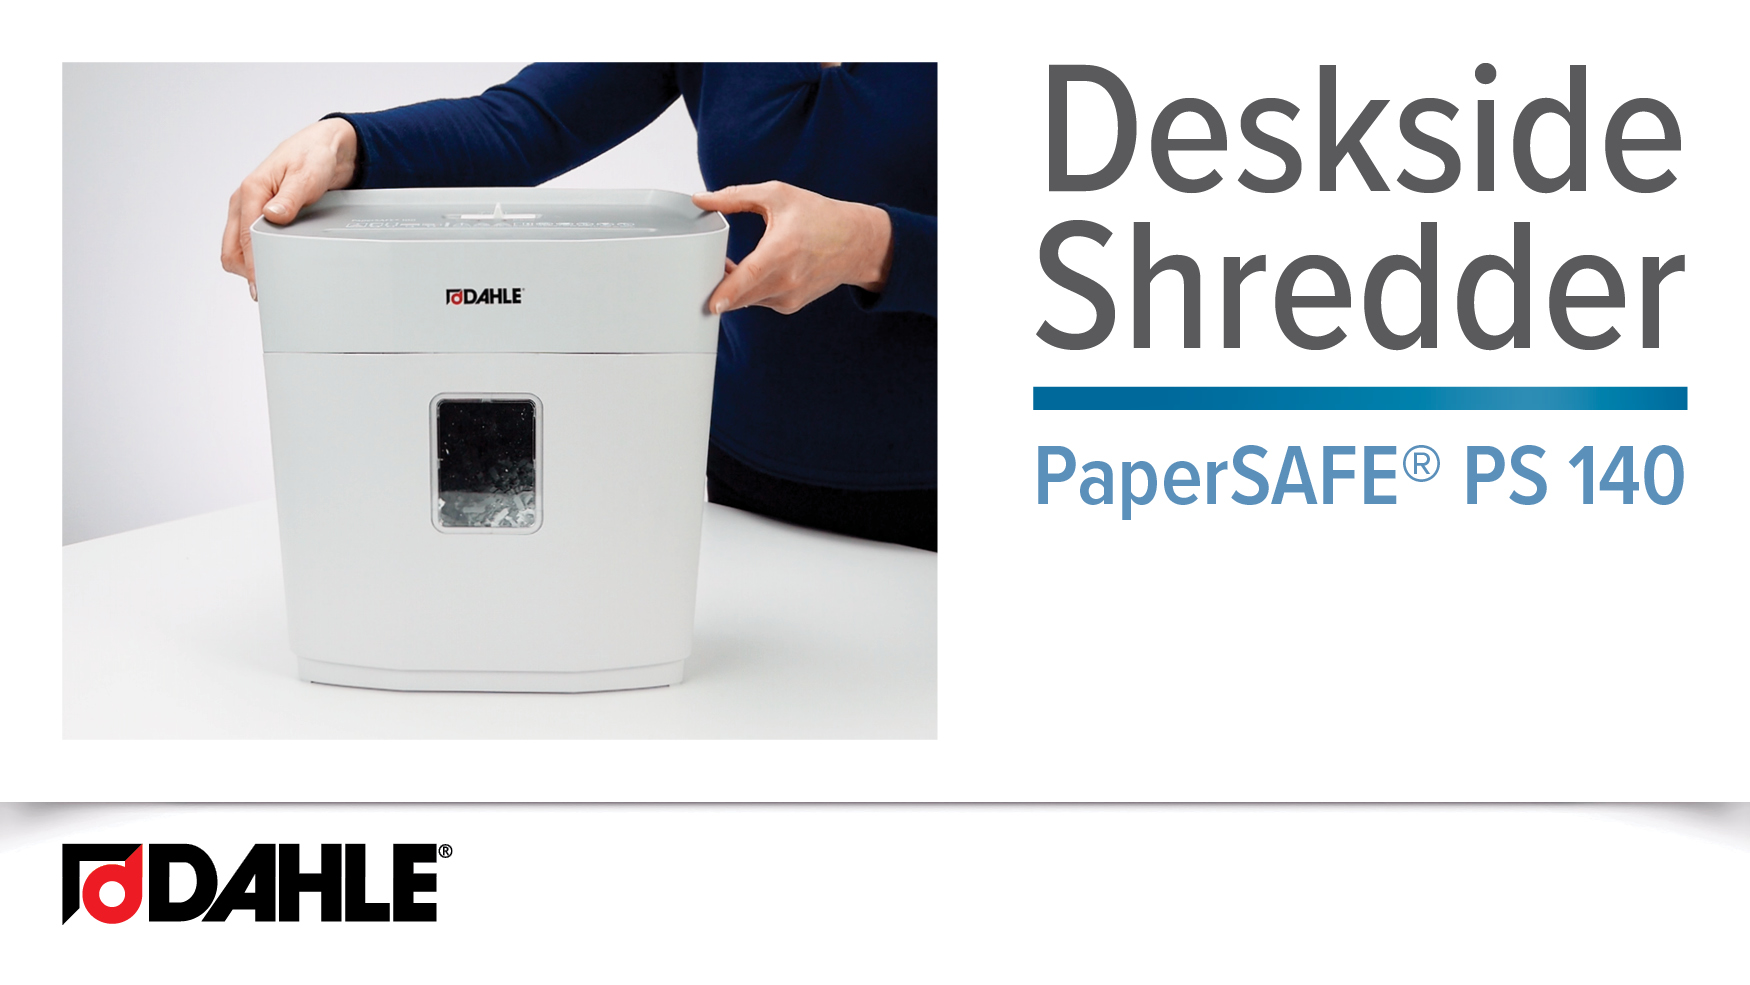 PaperSAFE® PS 140 Desk Side Shredder Video